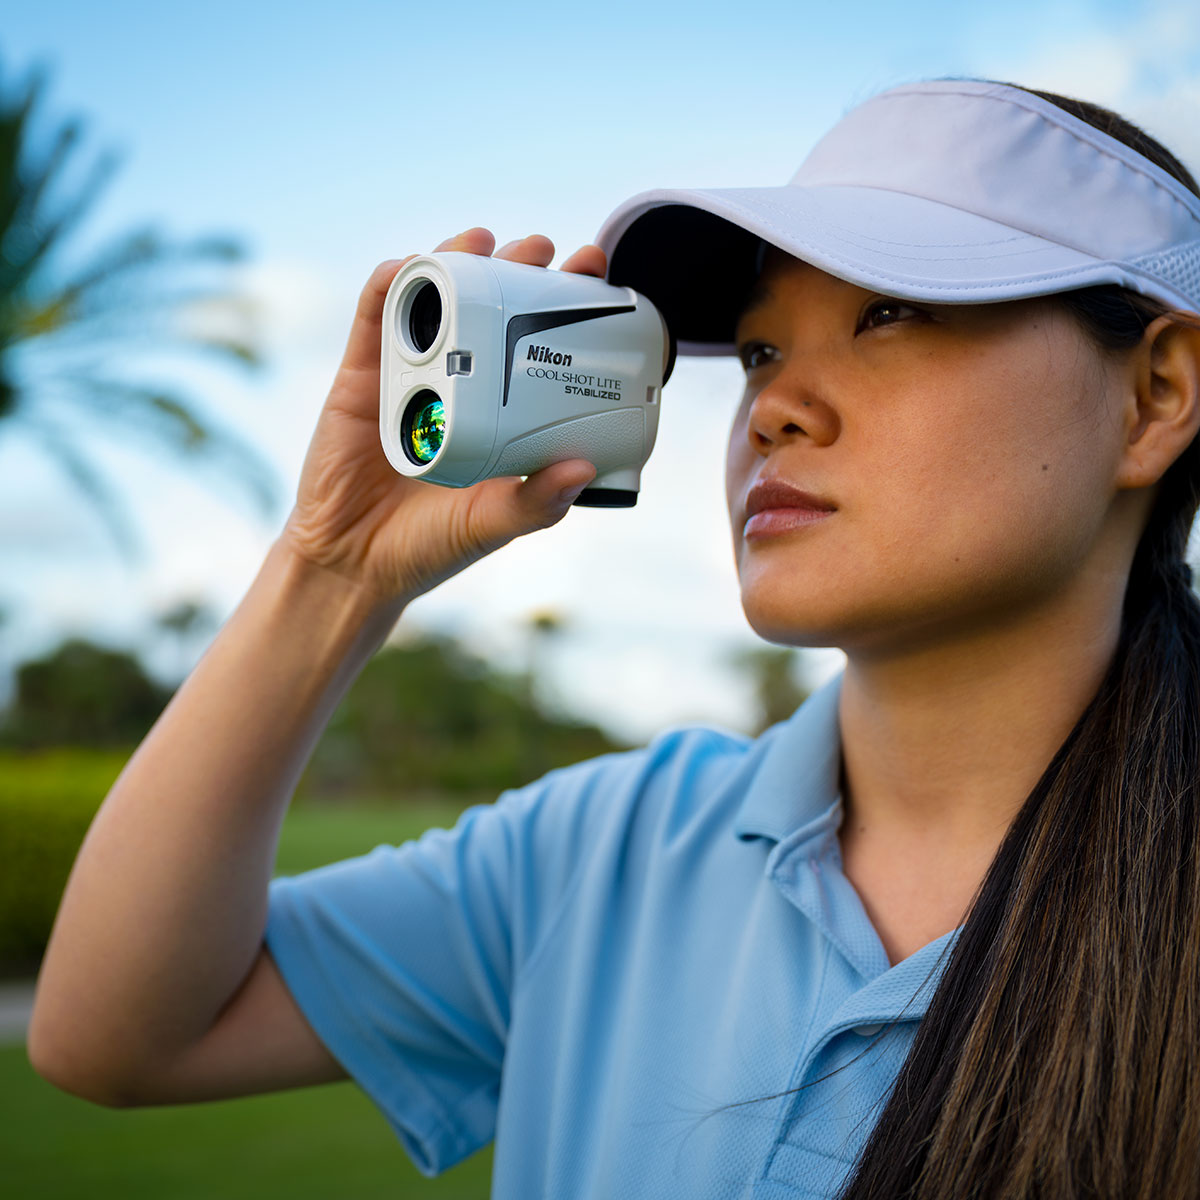 Nikon Coolshot Lite Stabilizer Golf Rangefinder from american golf